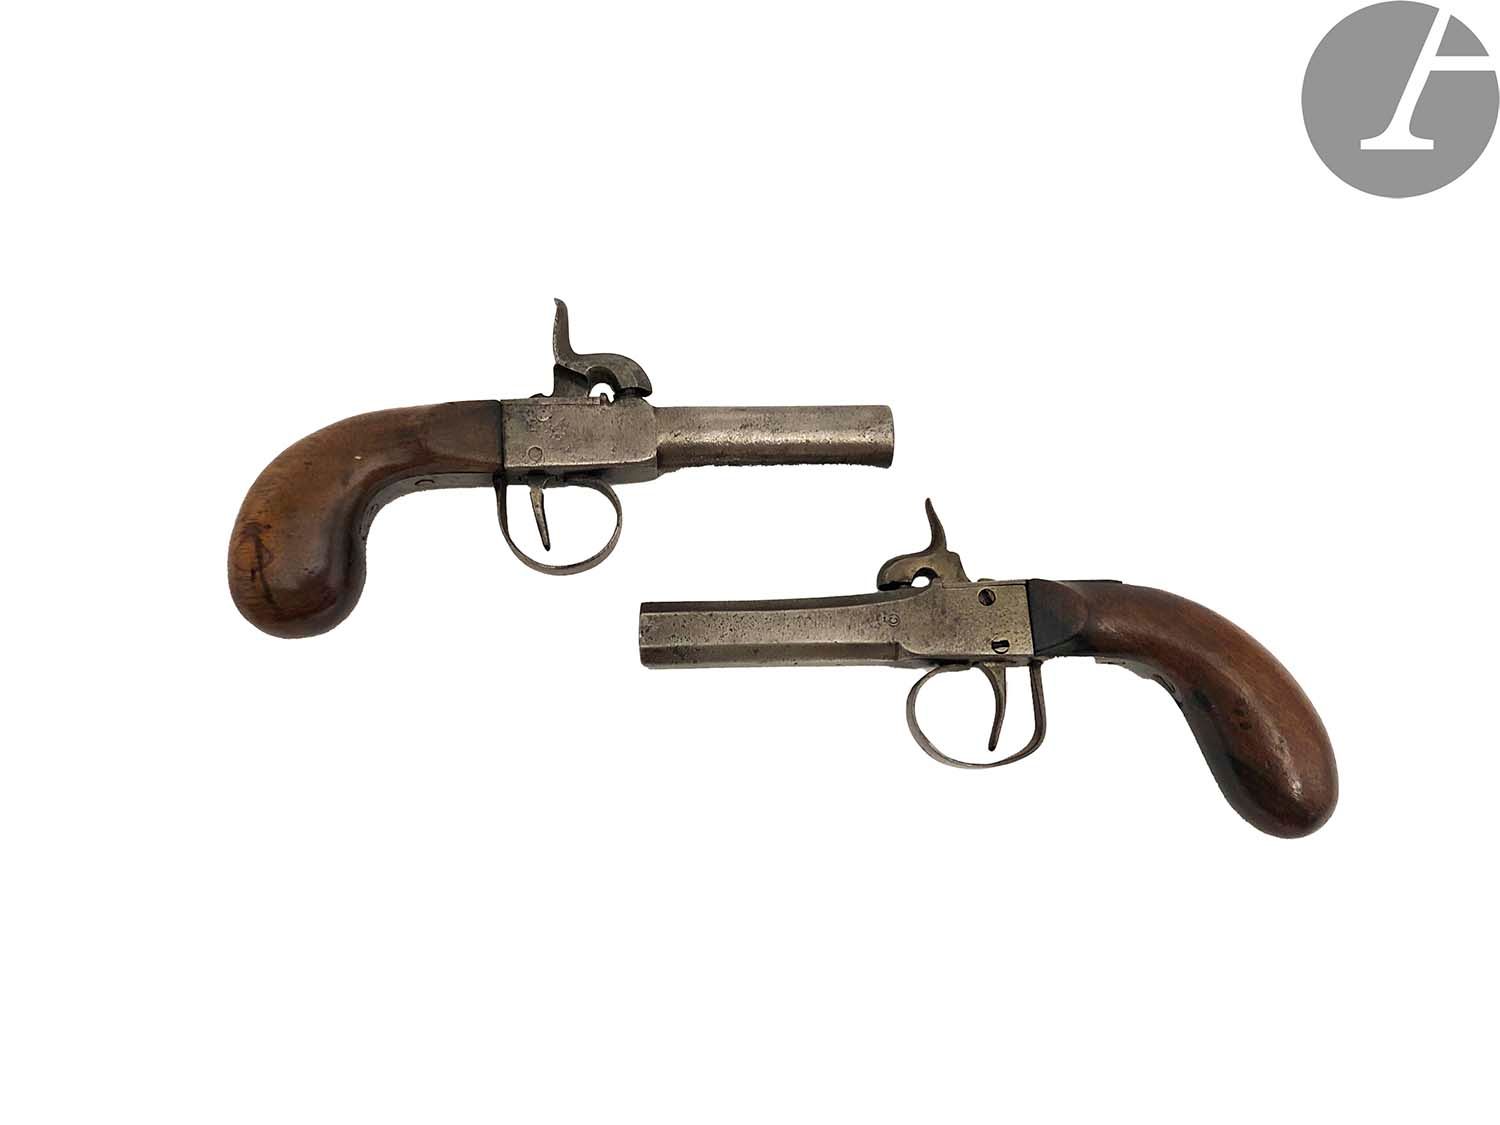 Null 两支打击式手枪。
一个是圆形枪管，铁扳机护圈，胡桃木枪托。
另一个是带边的枪管，铁扳机护圈，胡桃木枪托。
A.B.E.